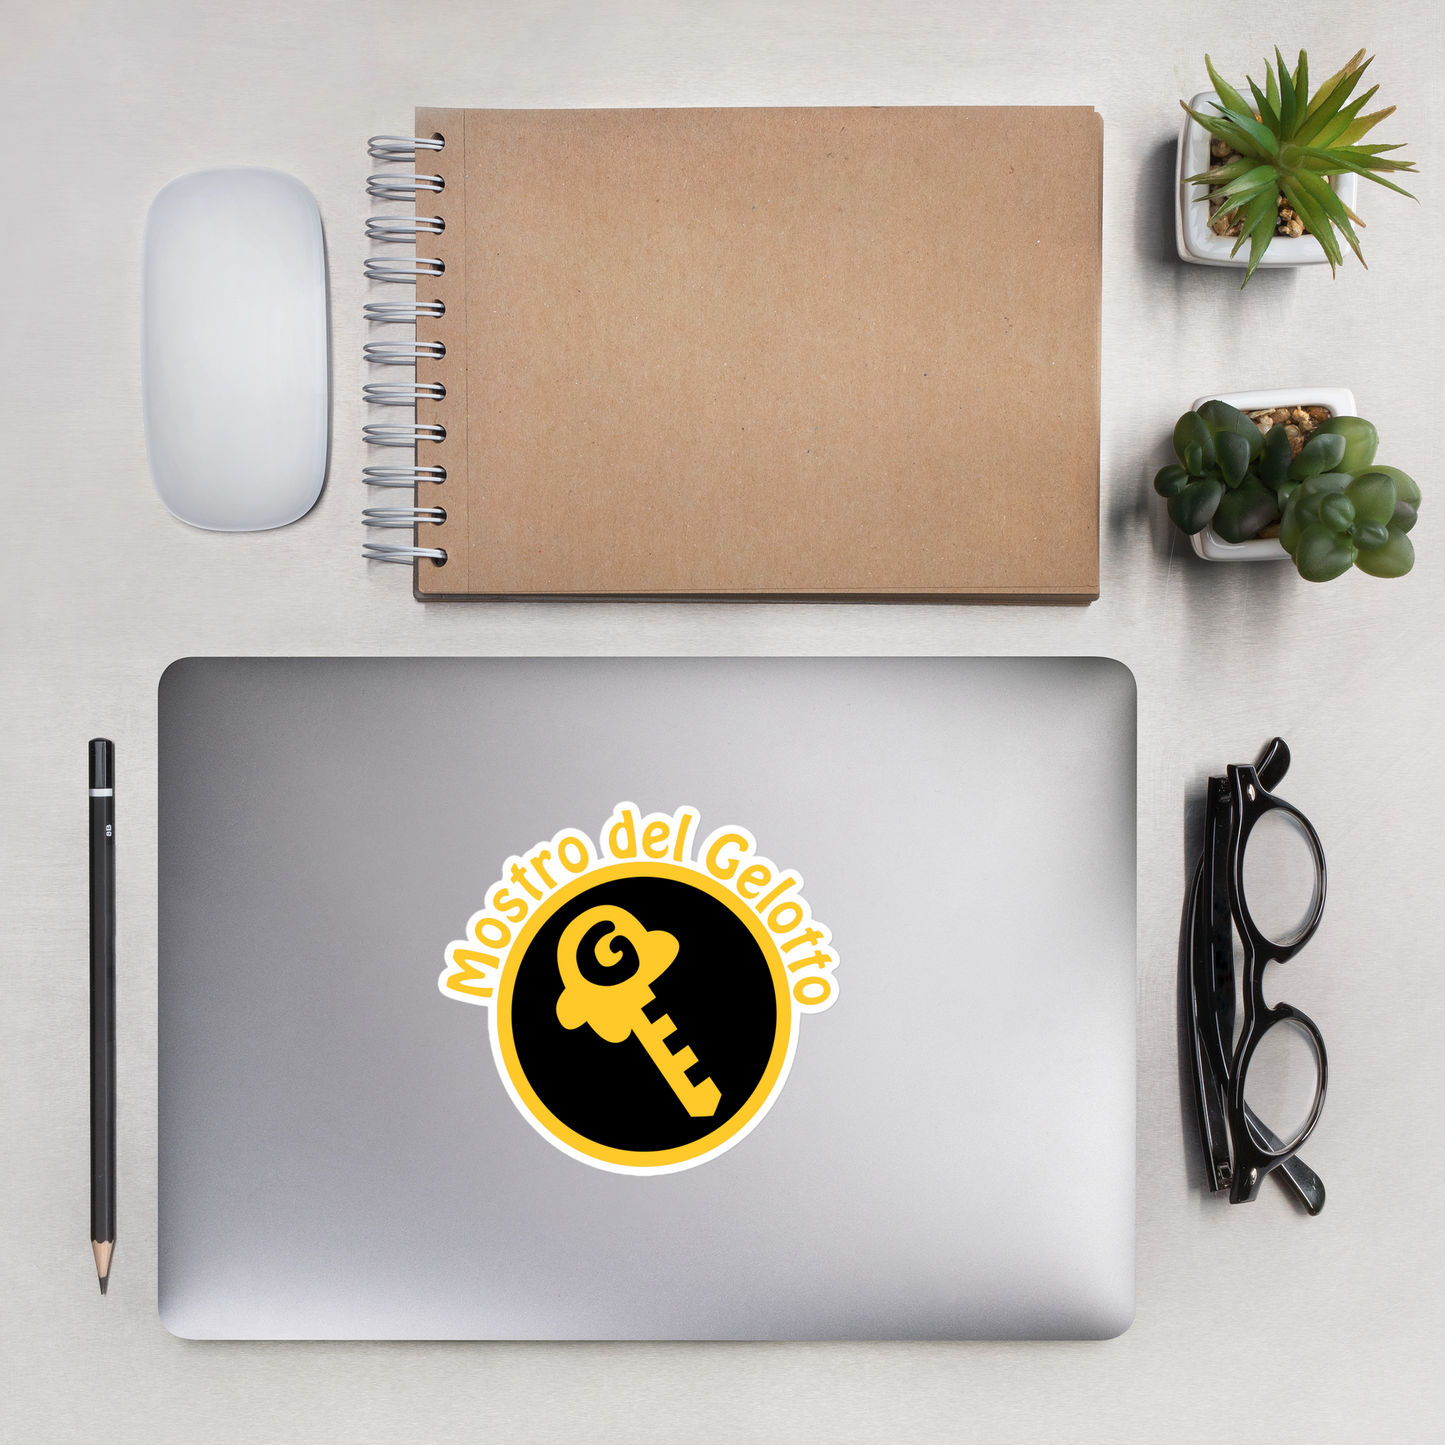 Mostro del Gelotto / Gkey Bubble-free stickers (gold and black logo)